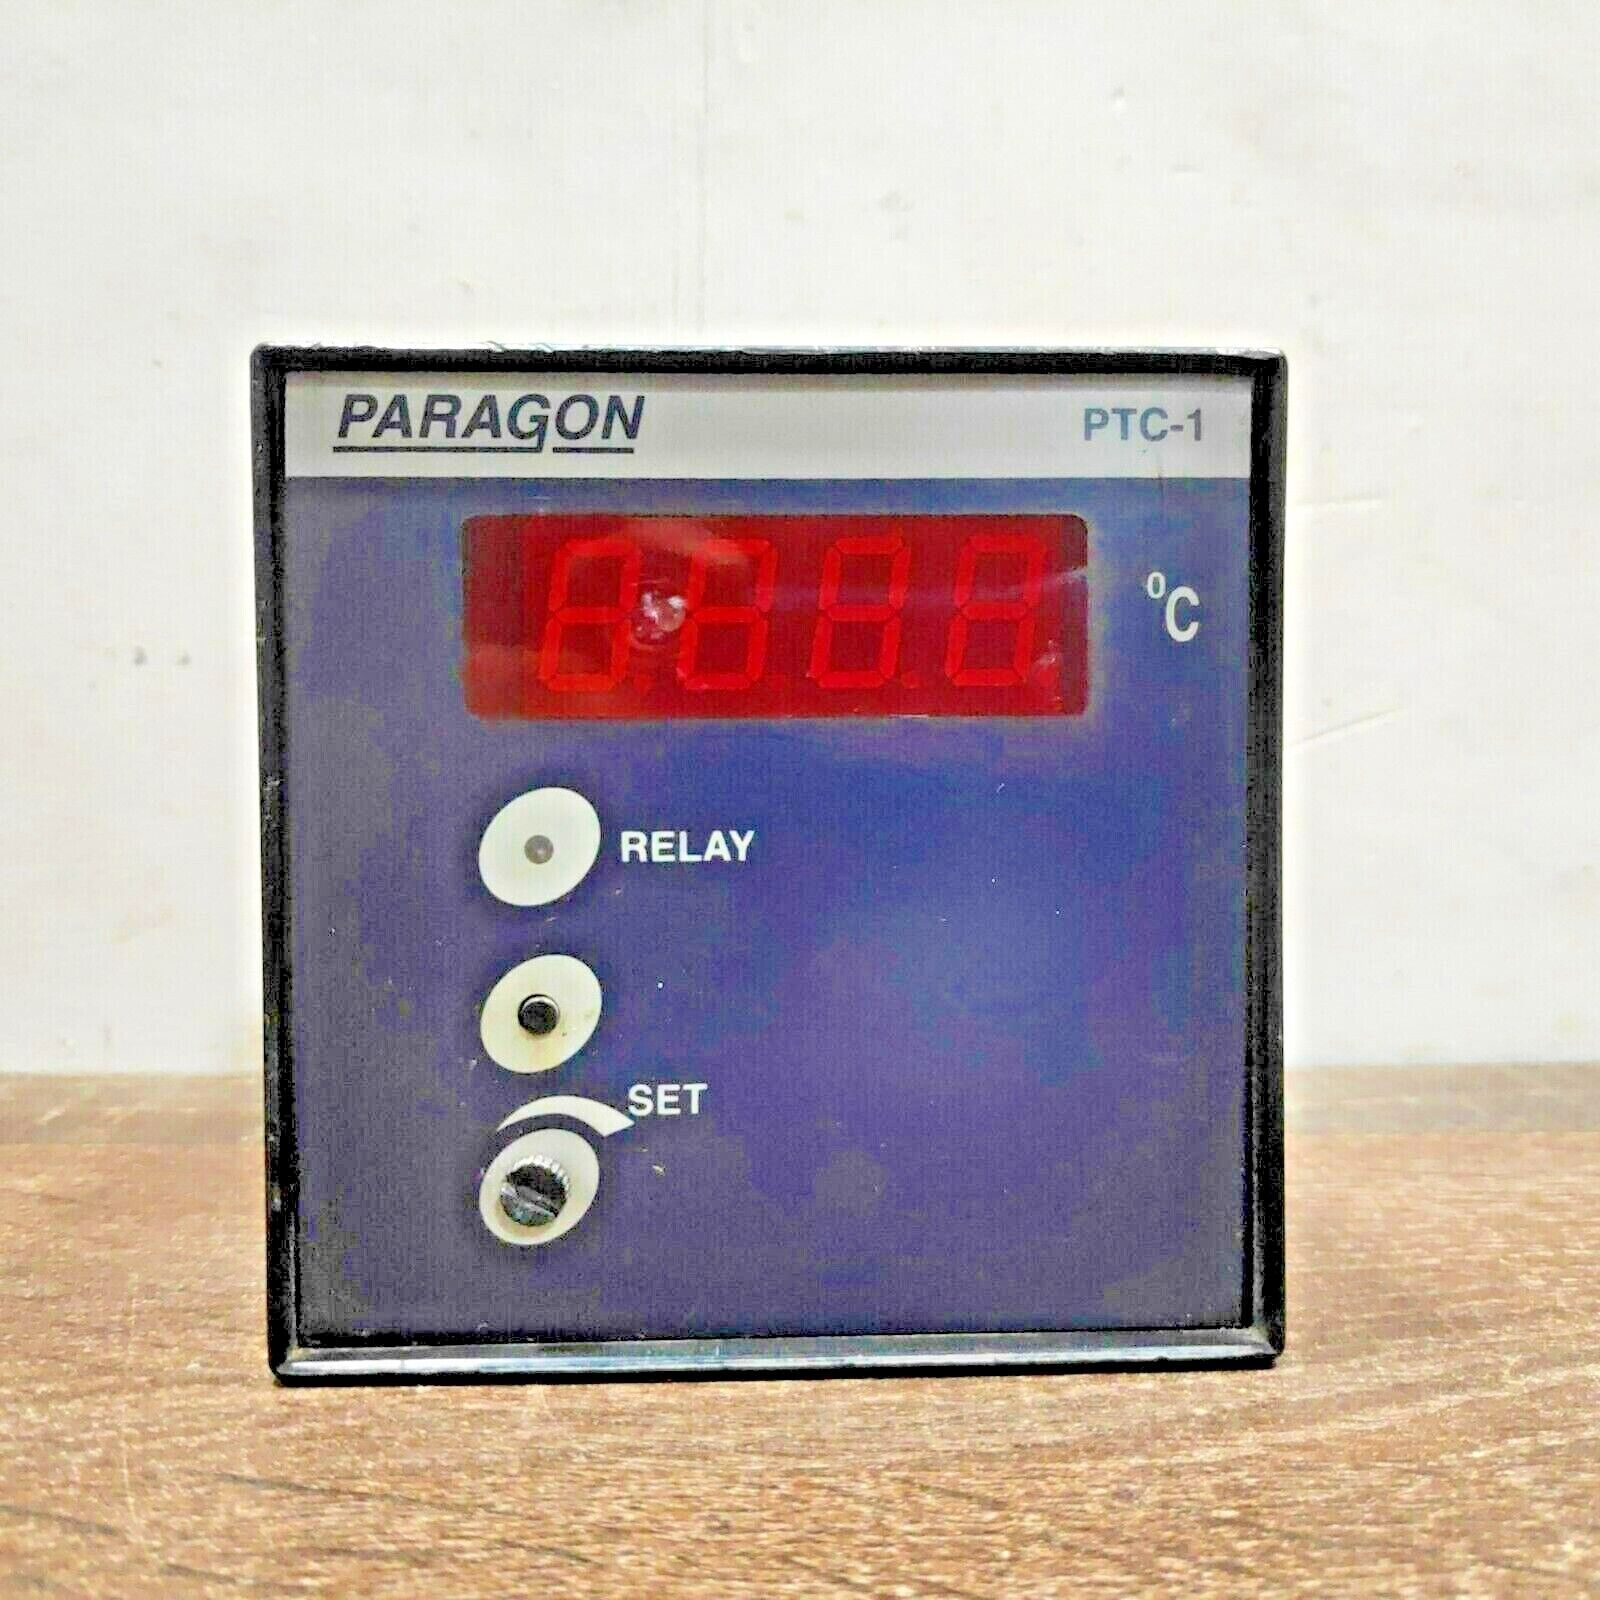 PARAGON PTC-1